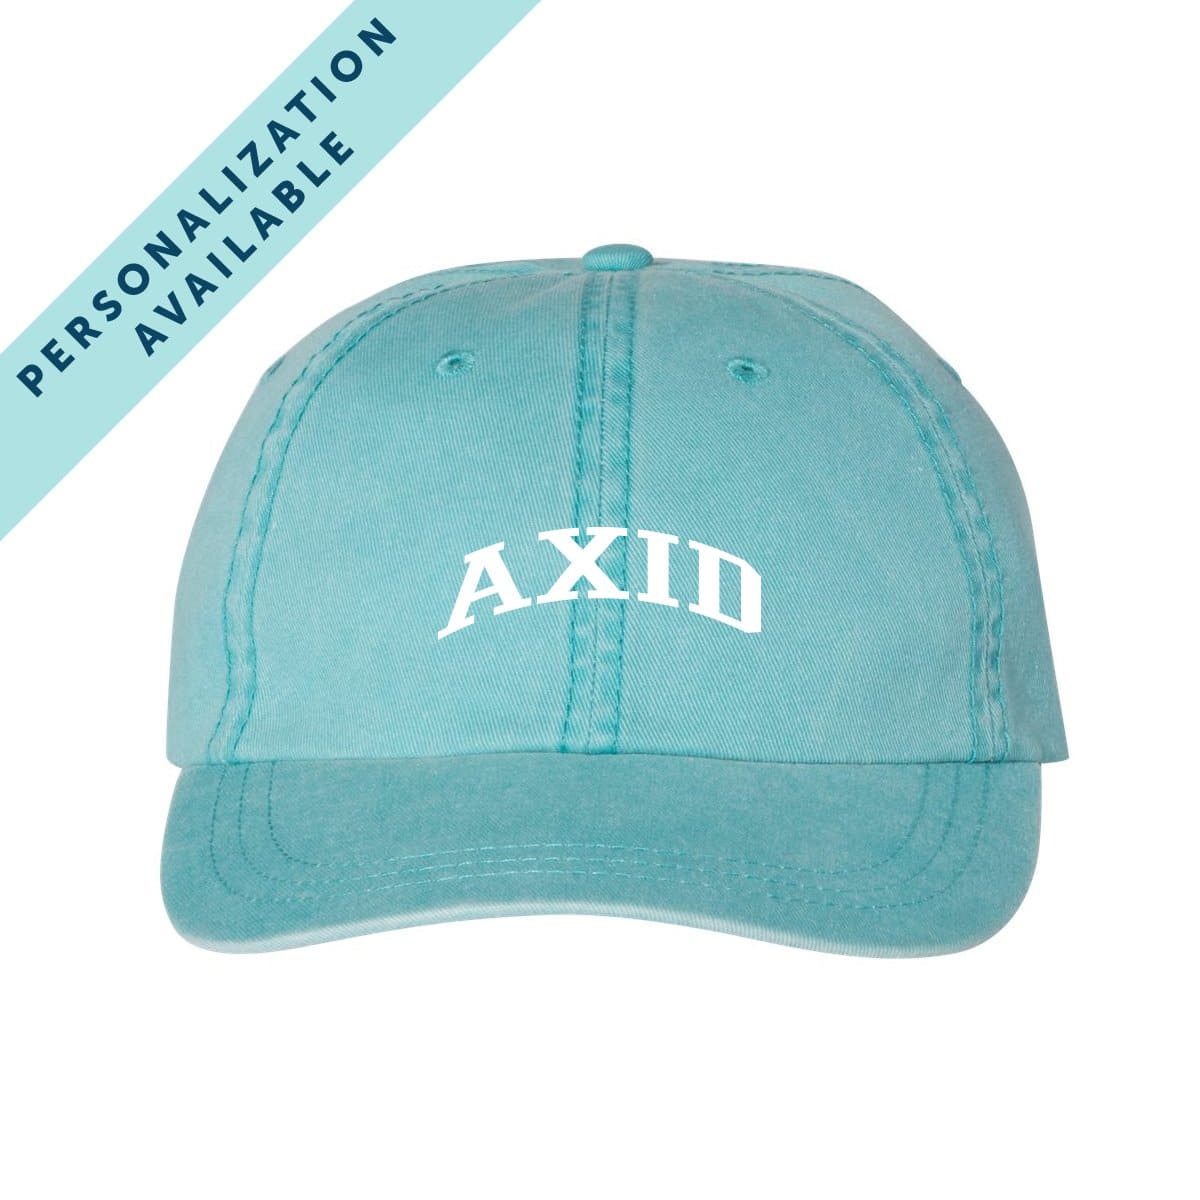 AXiD Classic Cap | Alpha Xi Delta | Headwear > Billed hats